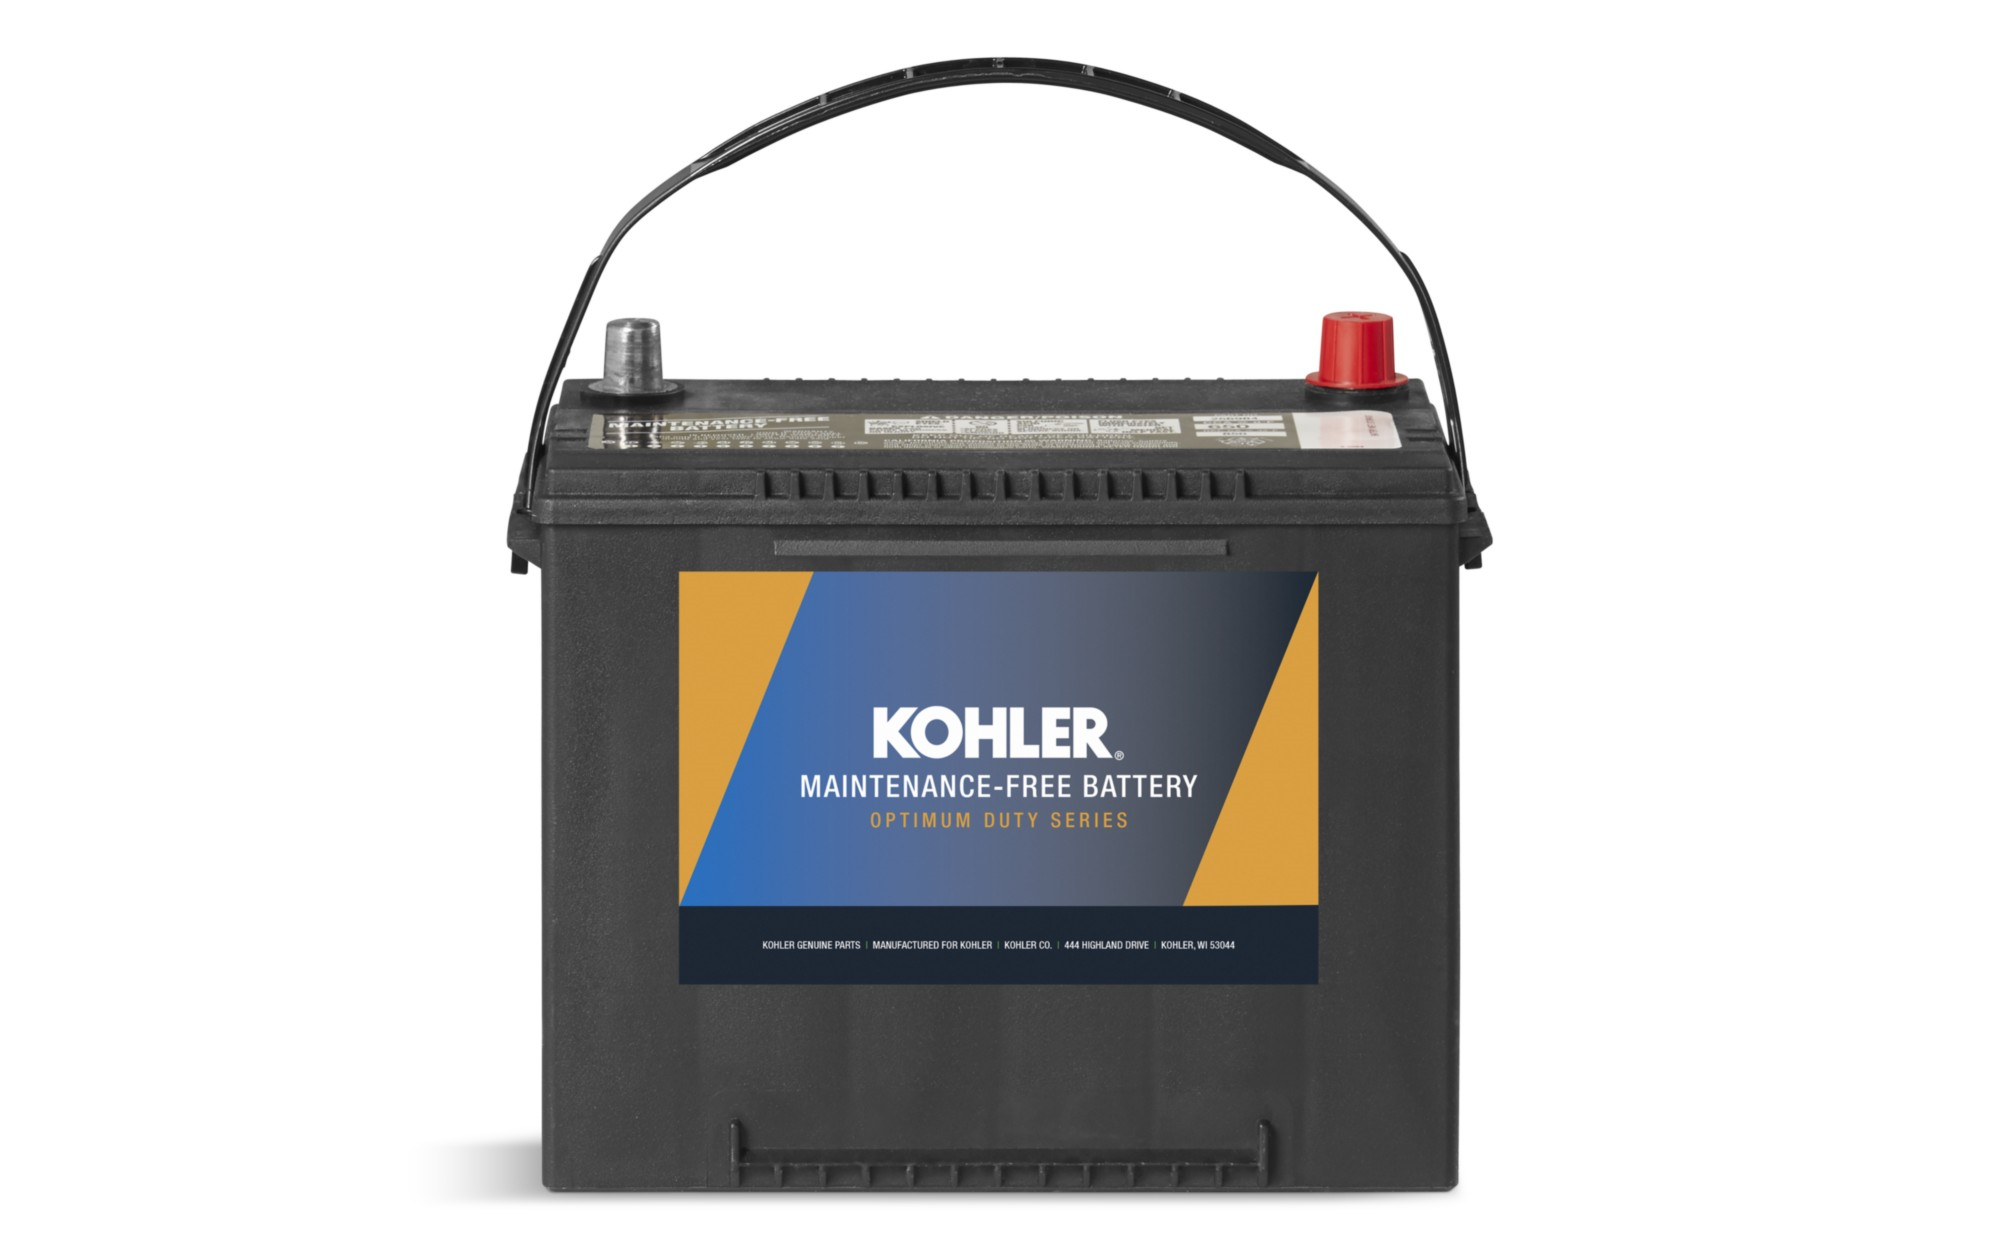 Kohler Genuine Battery Optimum Duty Series 500CCA Group 51 Wet 12V New